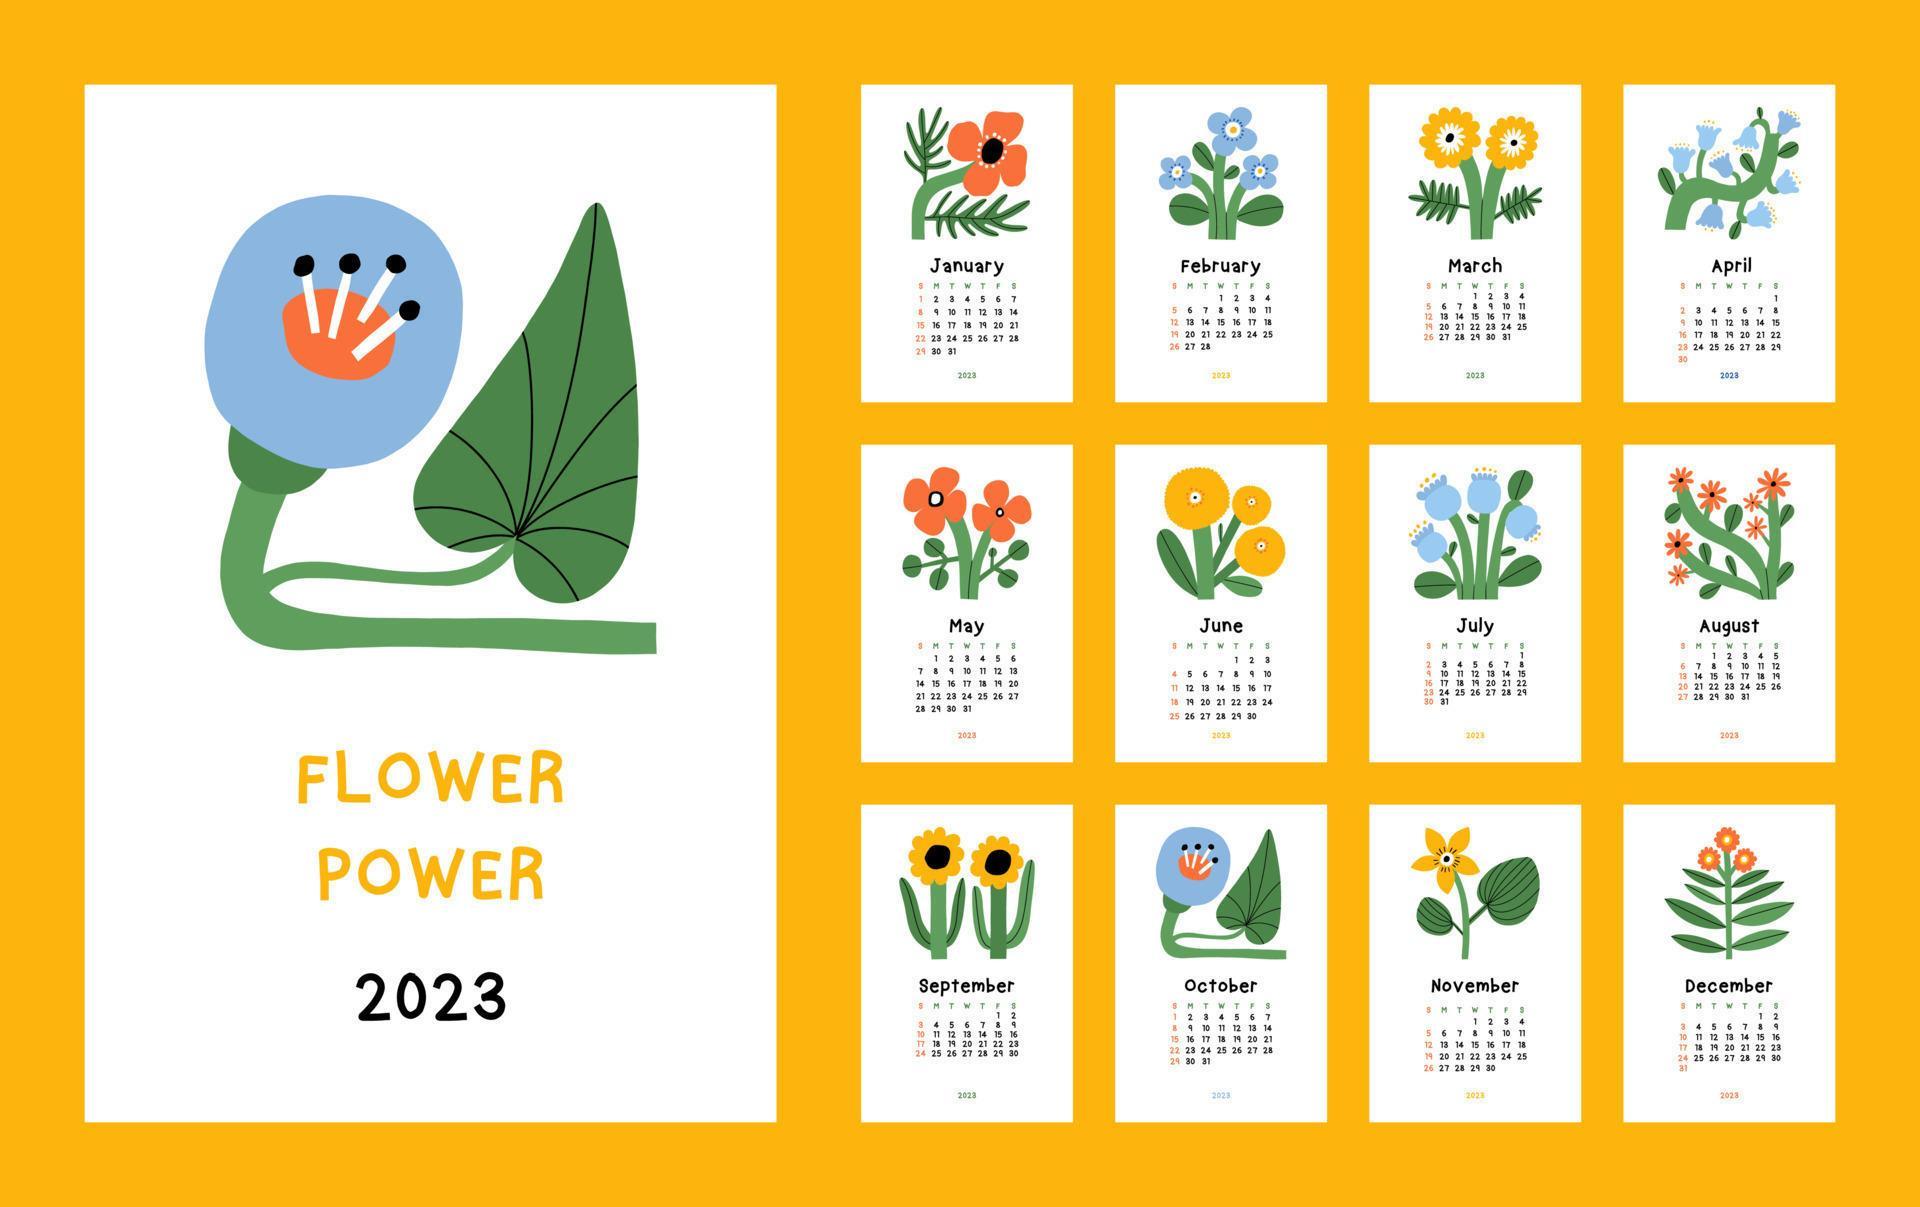 vacker blomkalender - flower power - 2023. botanisk utskrivbar vektormall. månadskalender med handritad blomma för 2023 år vektor